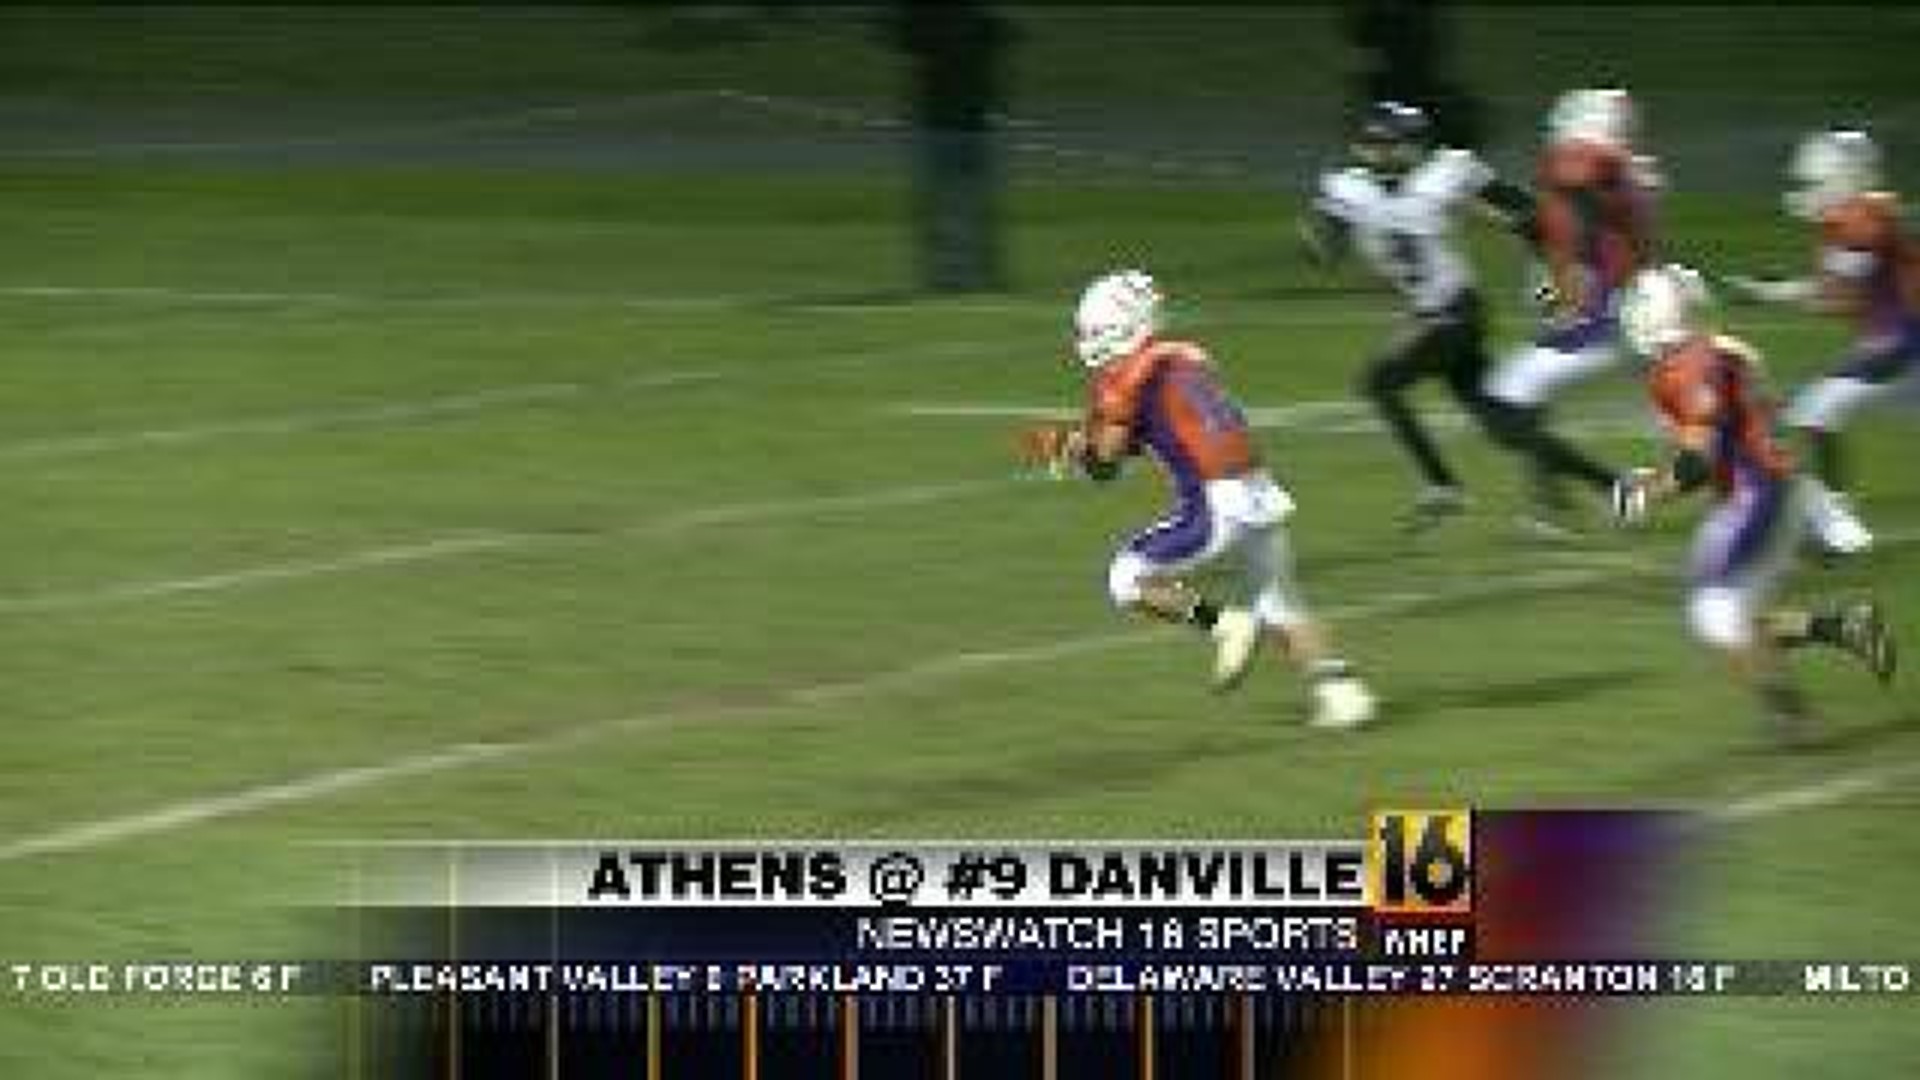 Athens vs. Danville